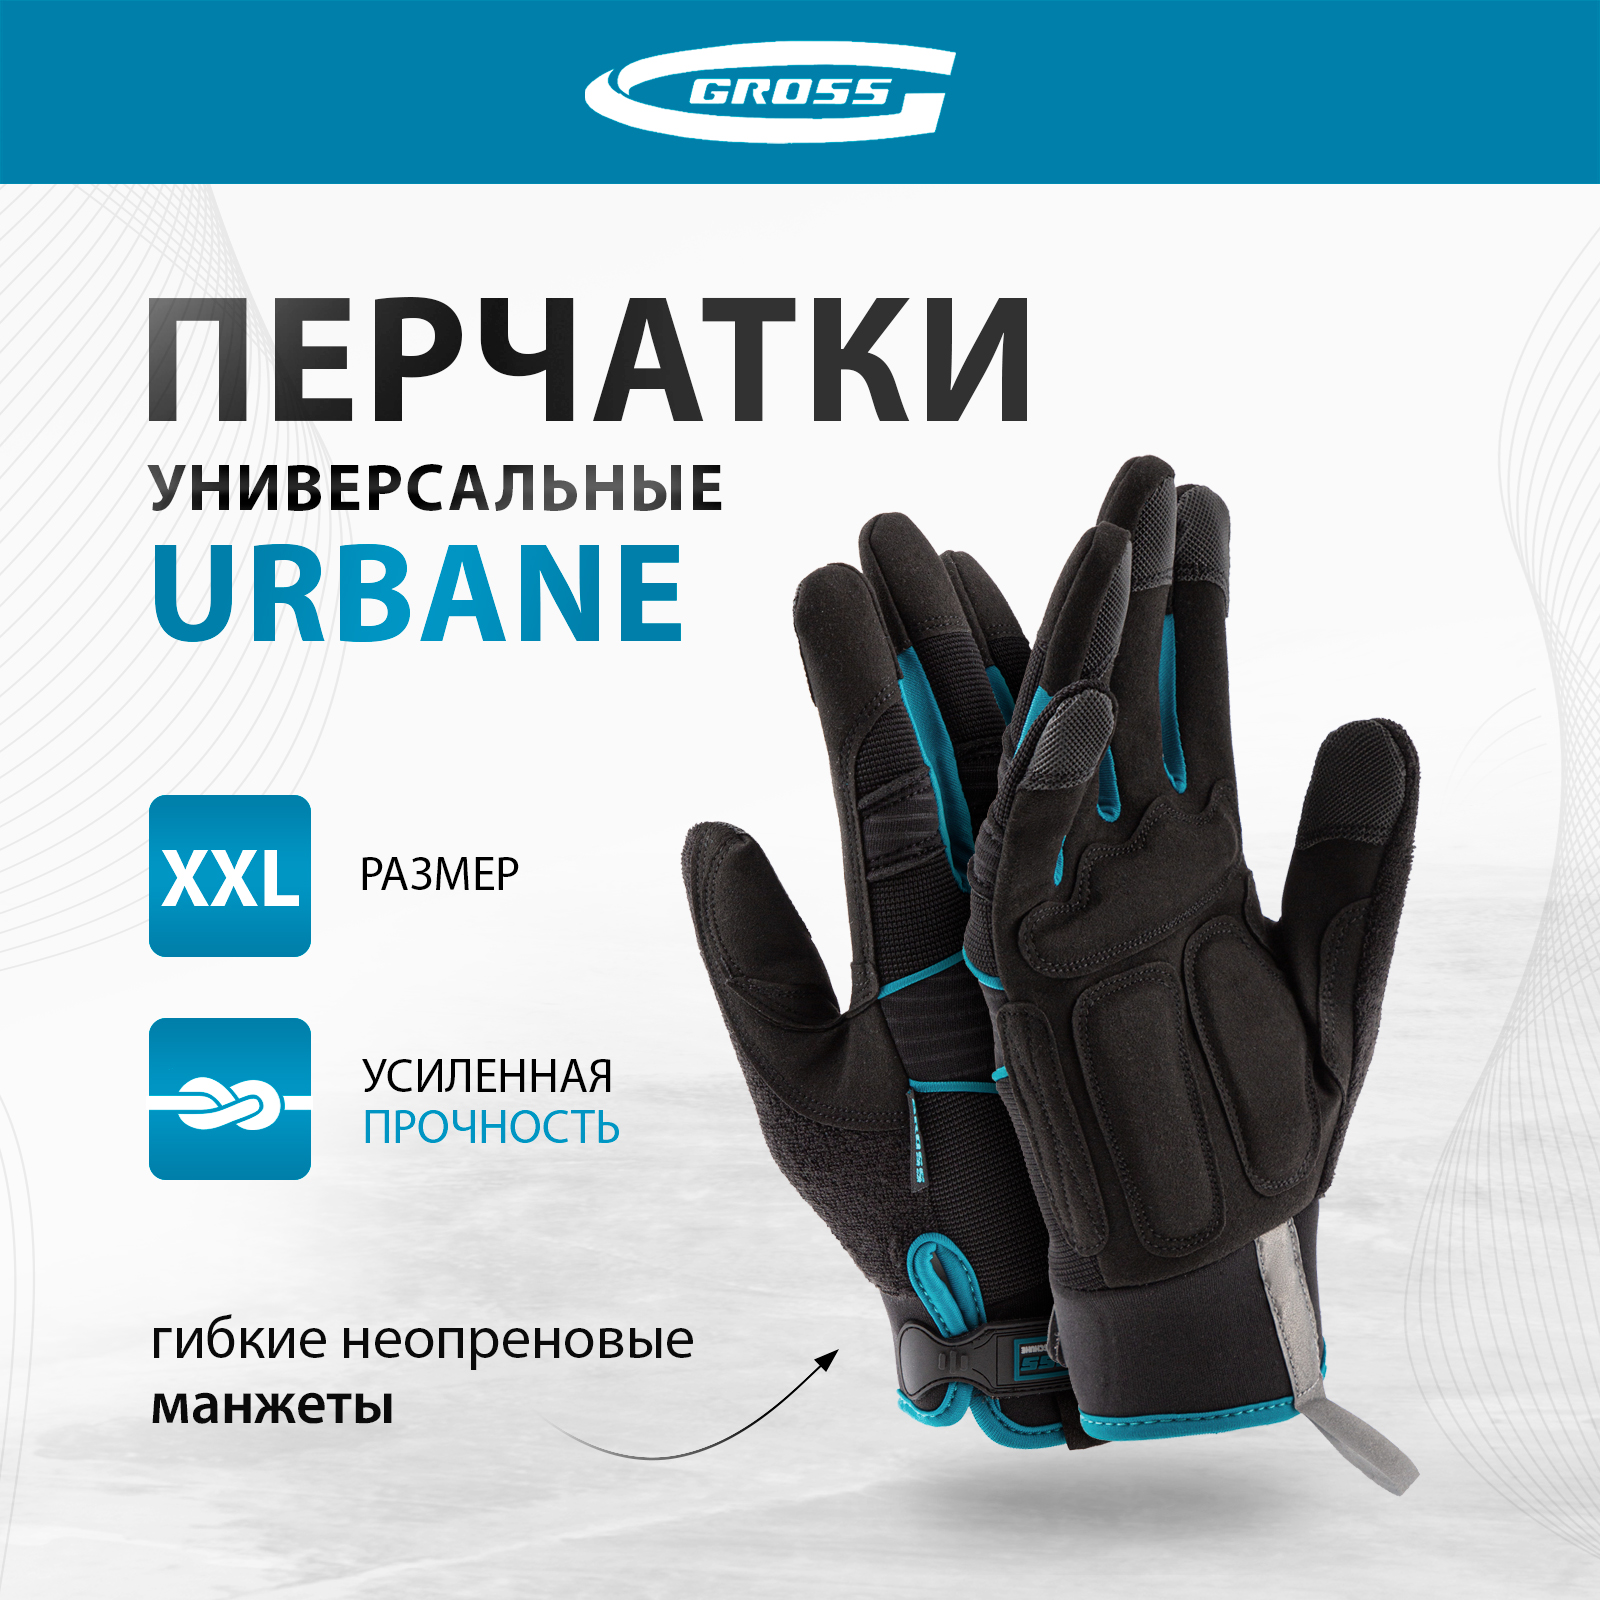 Перчатки универсальные комбинированные GROSS URBANE размер XL (10) 90313 перчатки универсальные denzel комбинированные строительные 67991